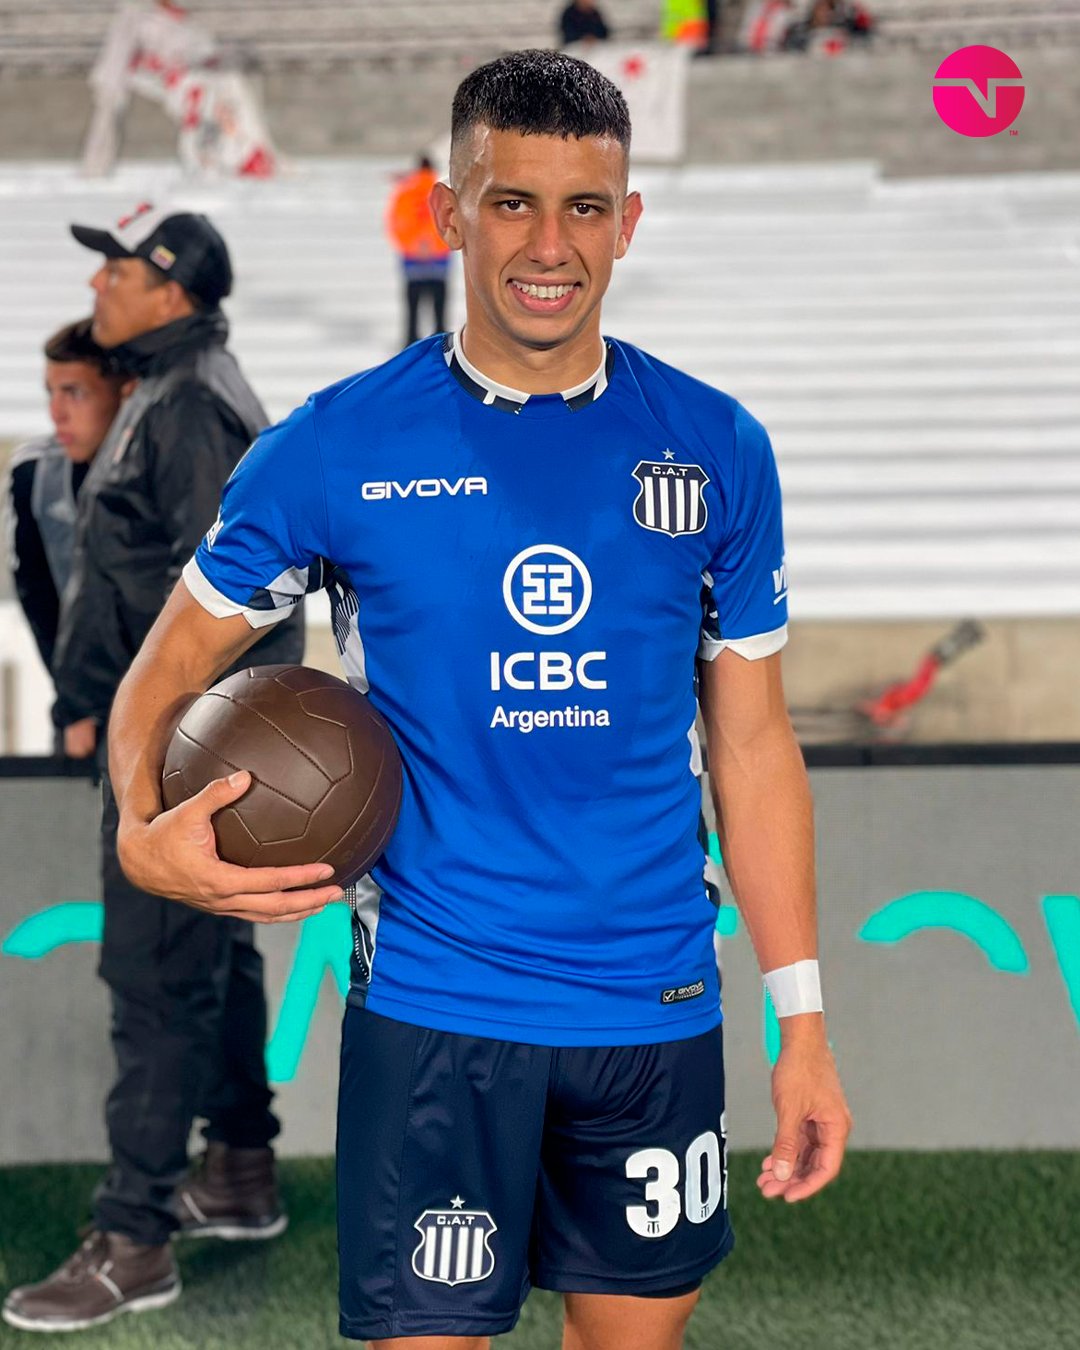 La emoción de Ortegoza tras convertir su primer gol en Talleres: "Todavía no puedo creerlo" | Canal Showsport